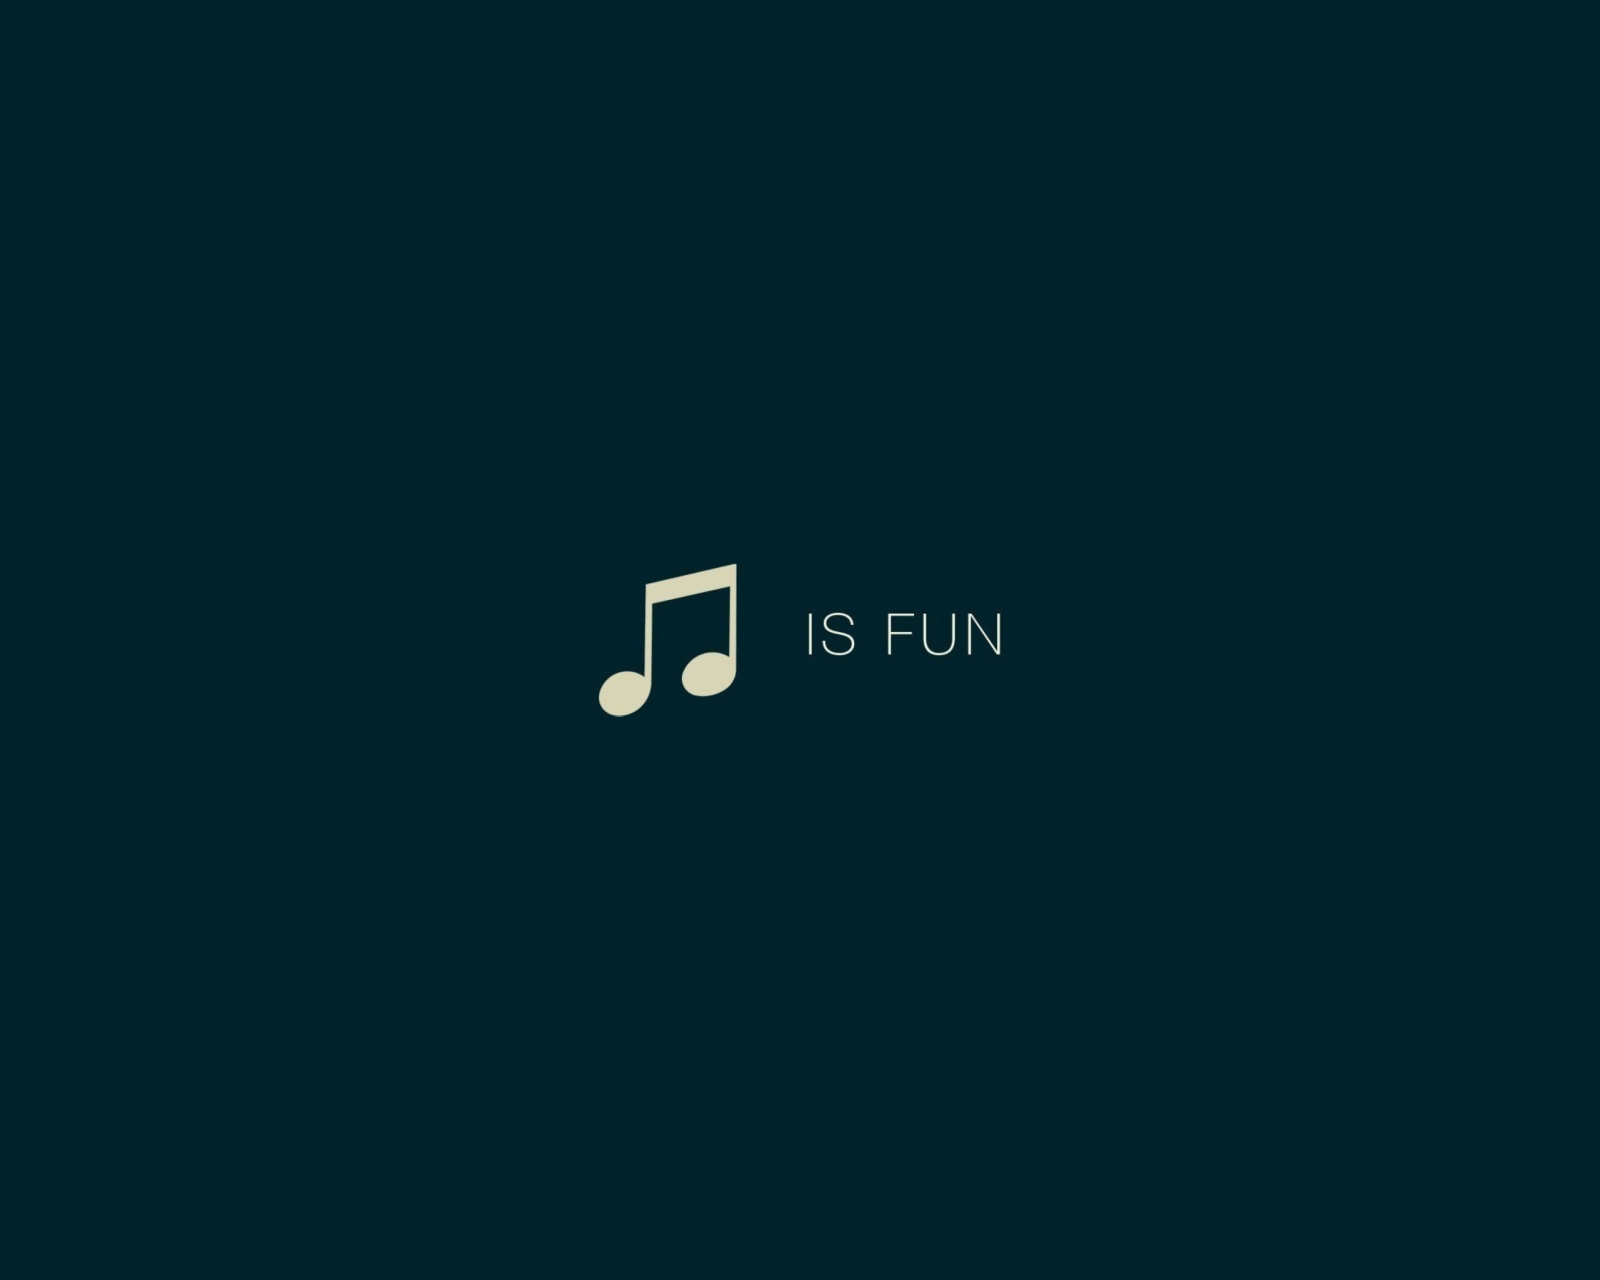 Das Music Is Fun Wallpaper 1600x1280